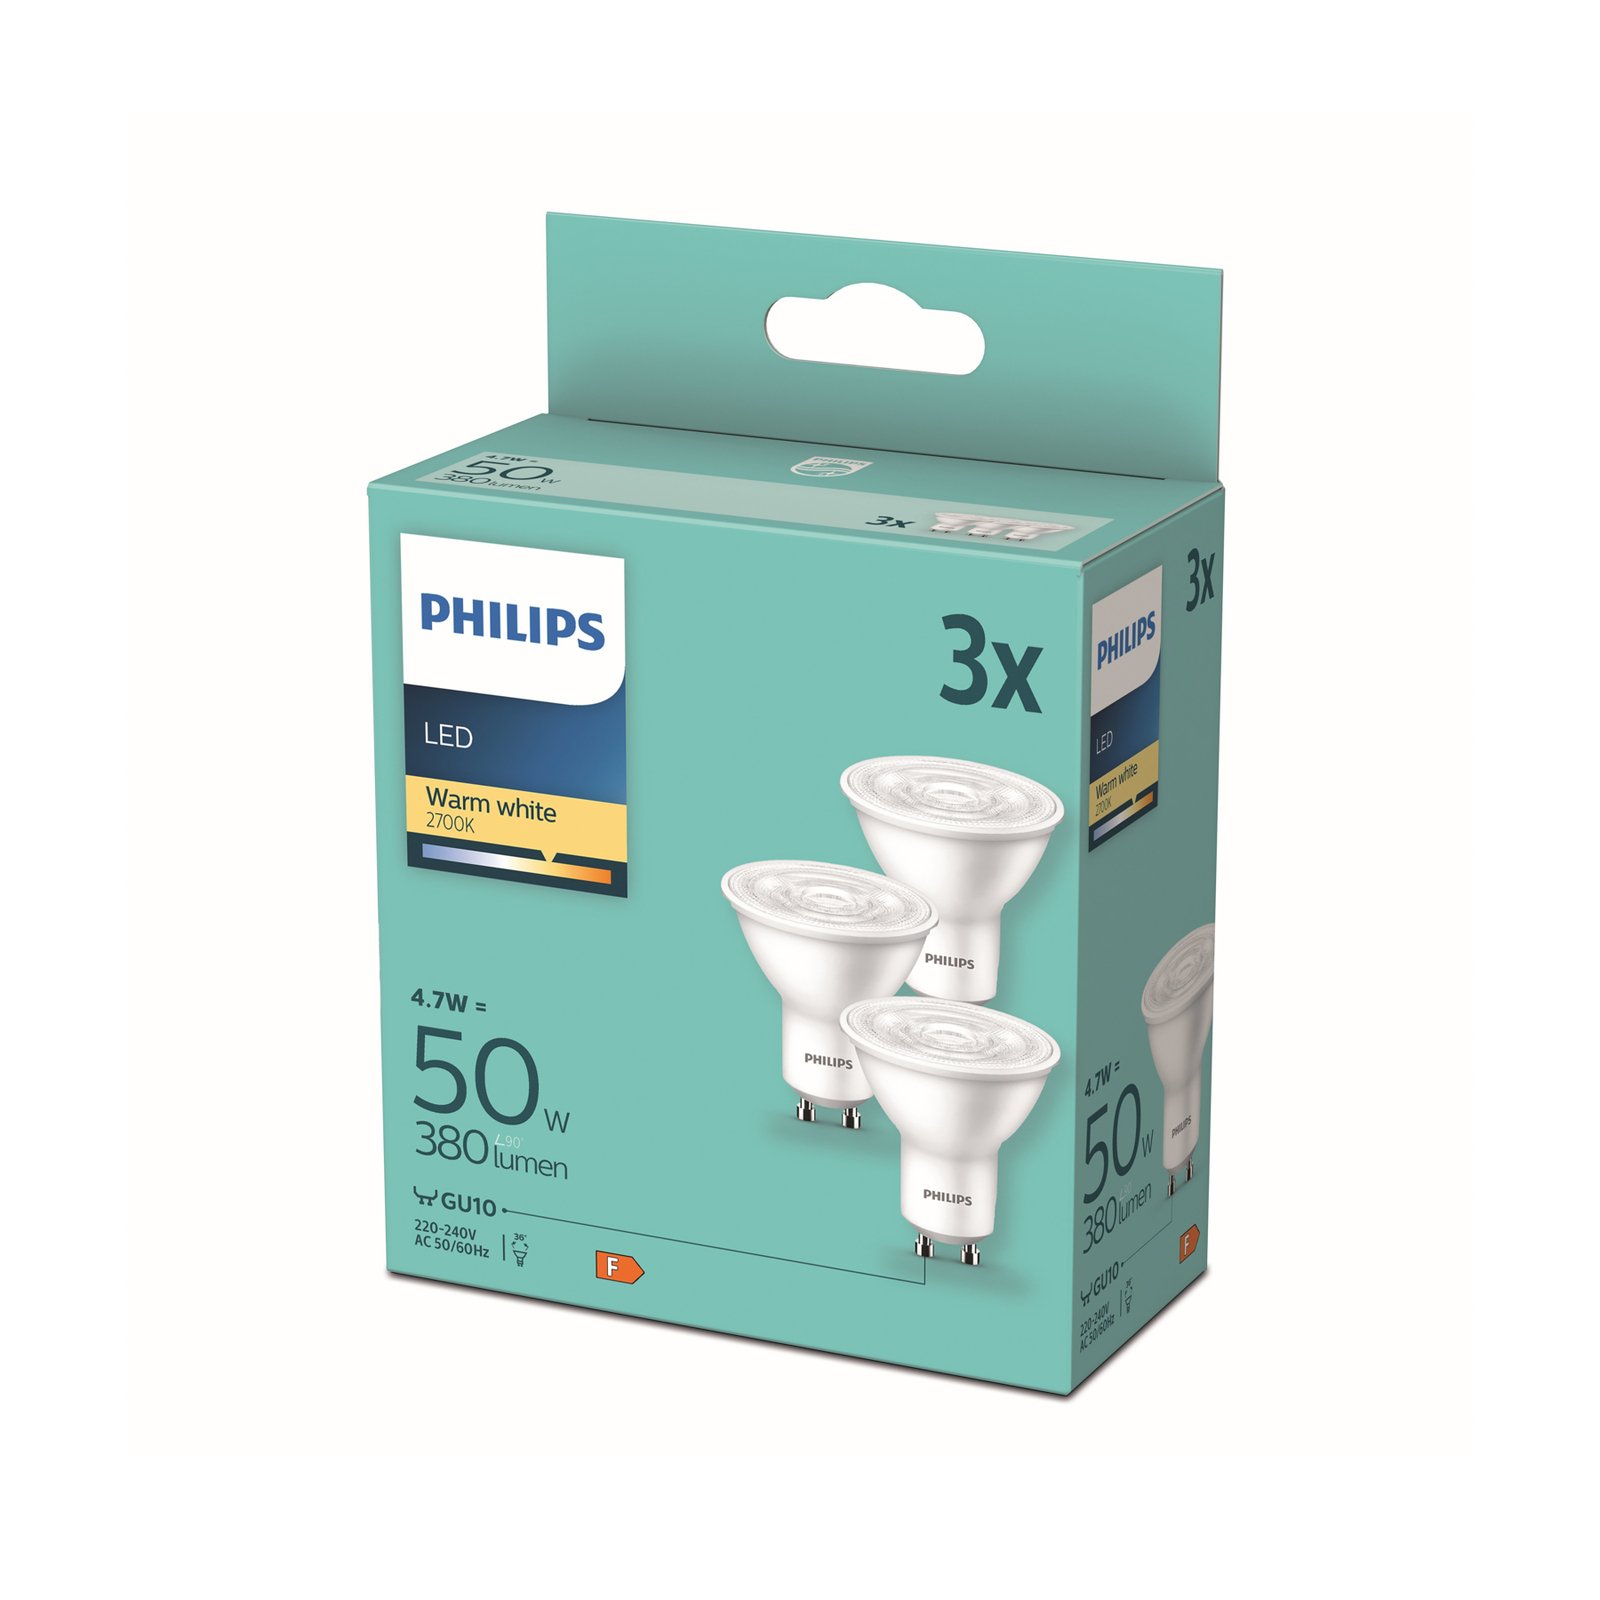 Philips reflector LED bulb GU10 4.7W white 2700K 3